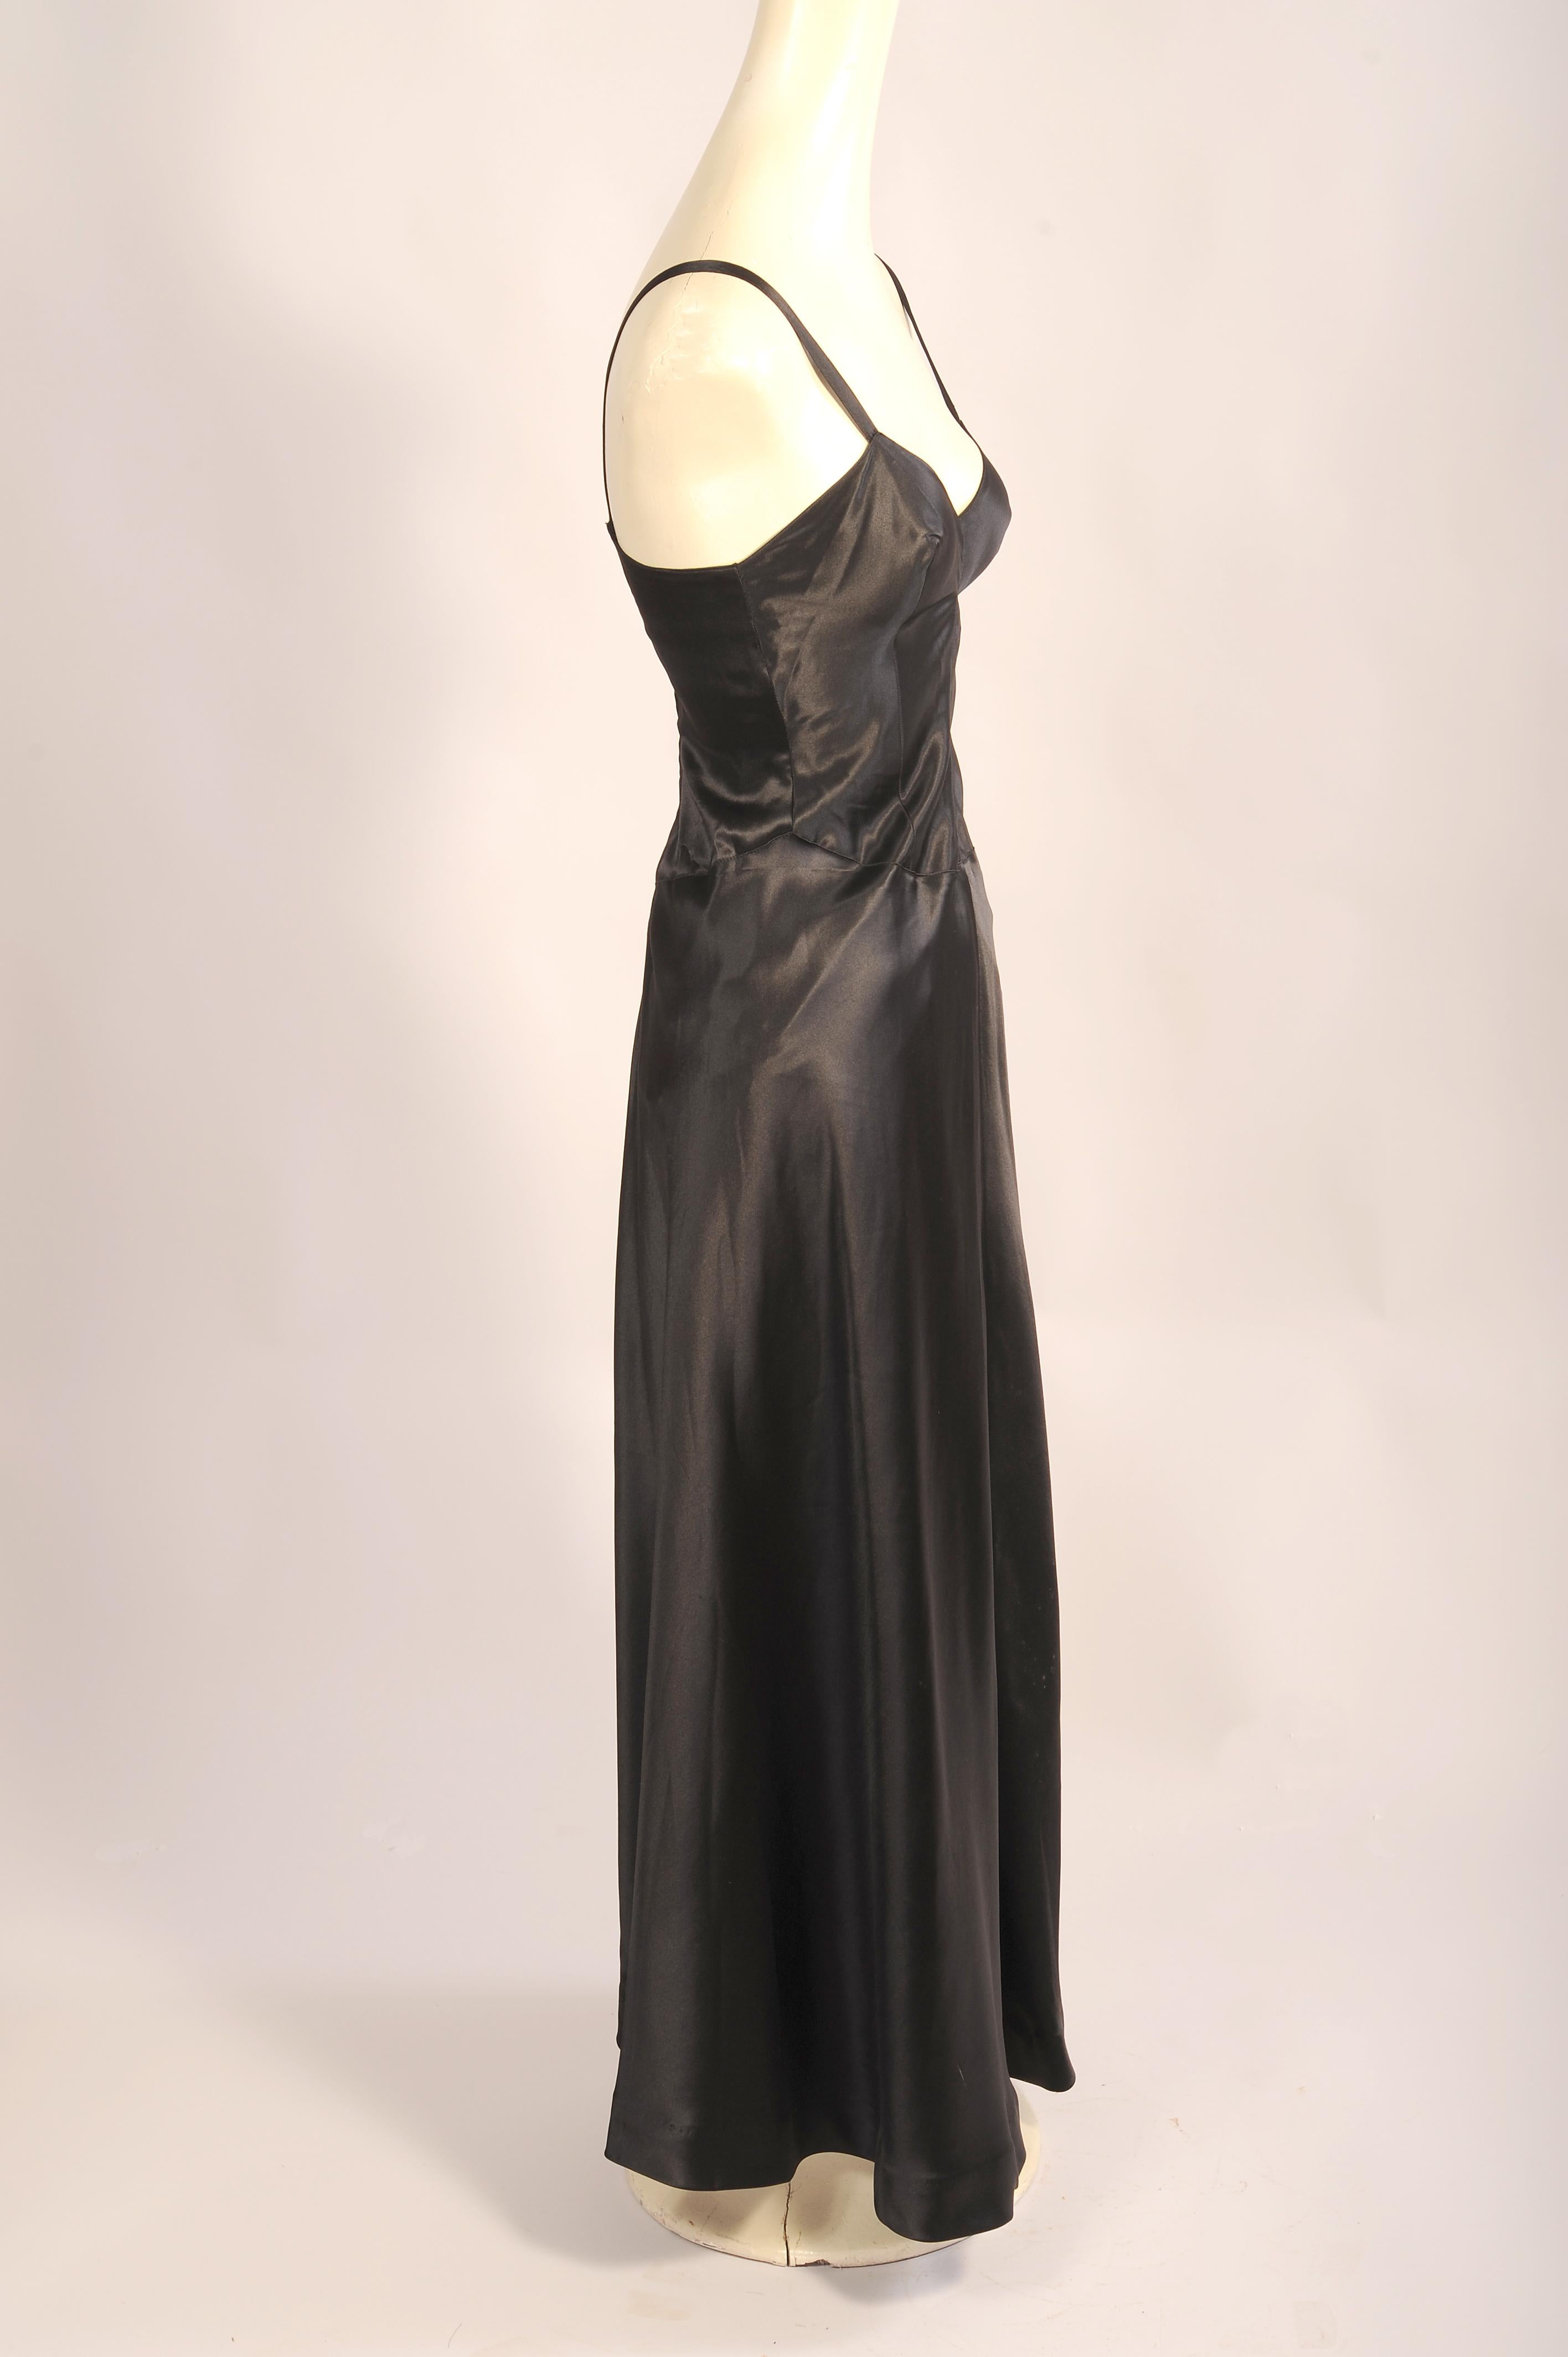 Dies ist ein sehr ungewöhnliches Design, ein schwarzer schräg geschnittener Seidensatin-Slip/Kleid mit Strumpfbändern als integraler Bestandteil des Designs, das von Laure Belin in Paris entworfen wurde. Sie war eine angesehene Designerin, die in